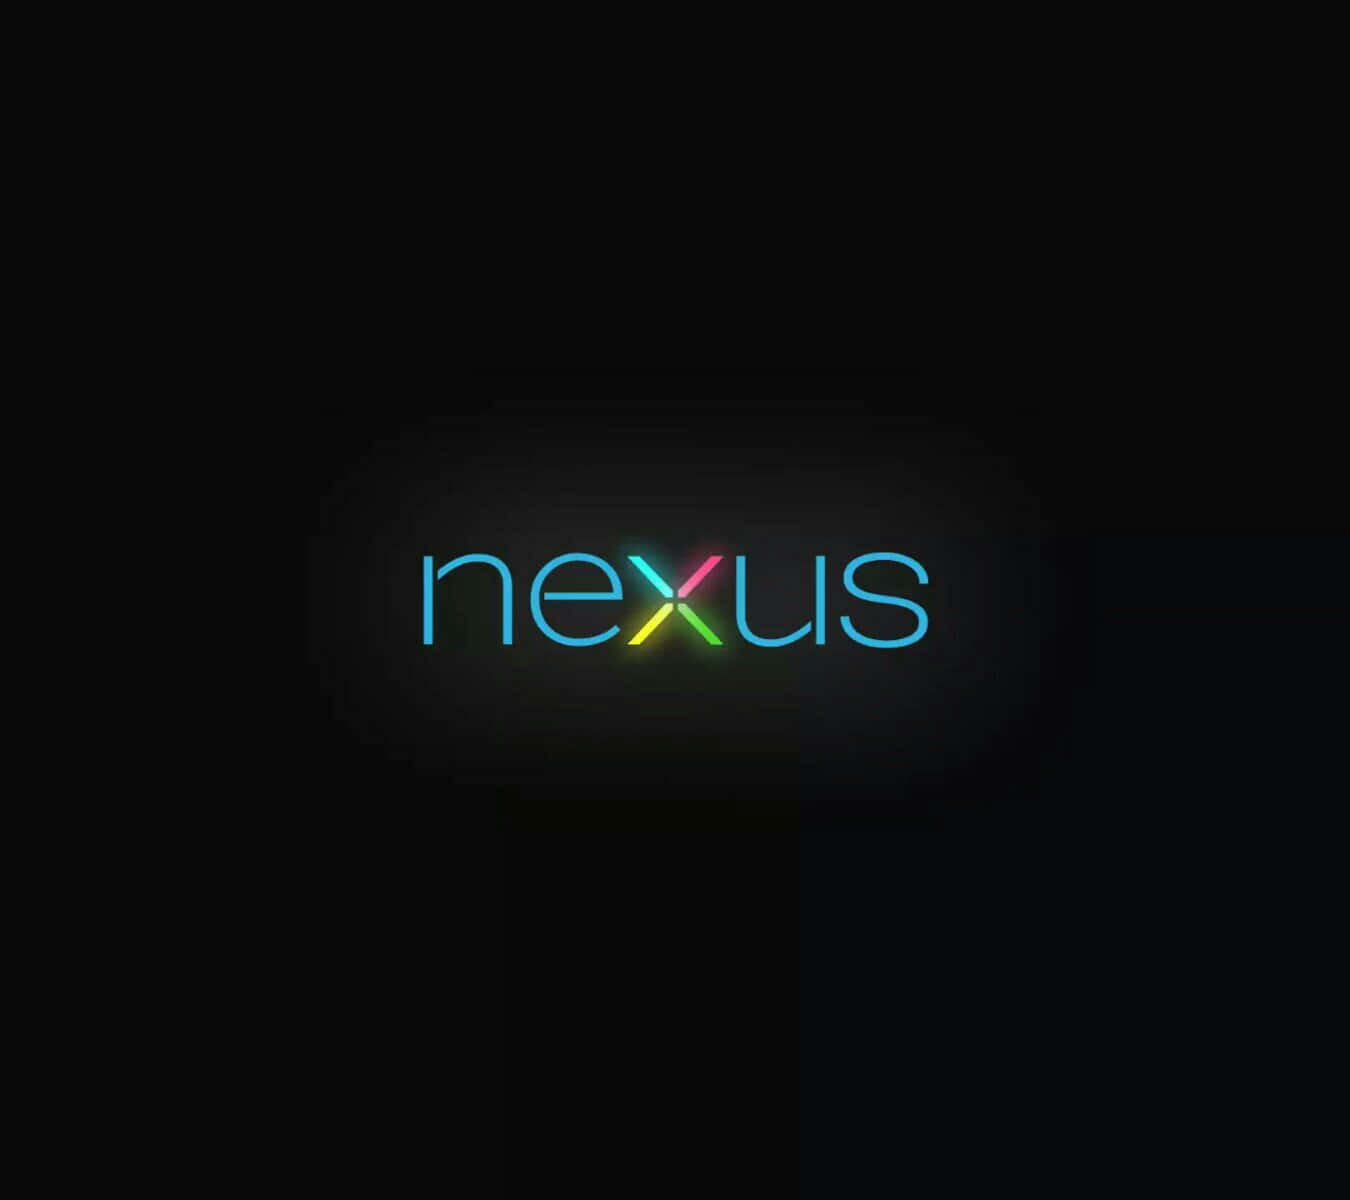 nexus 5 wallpaper